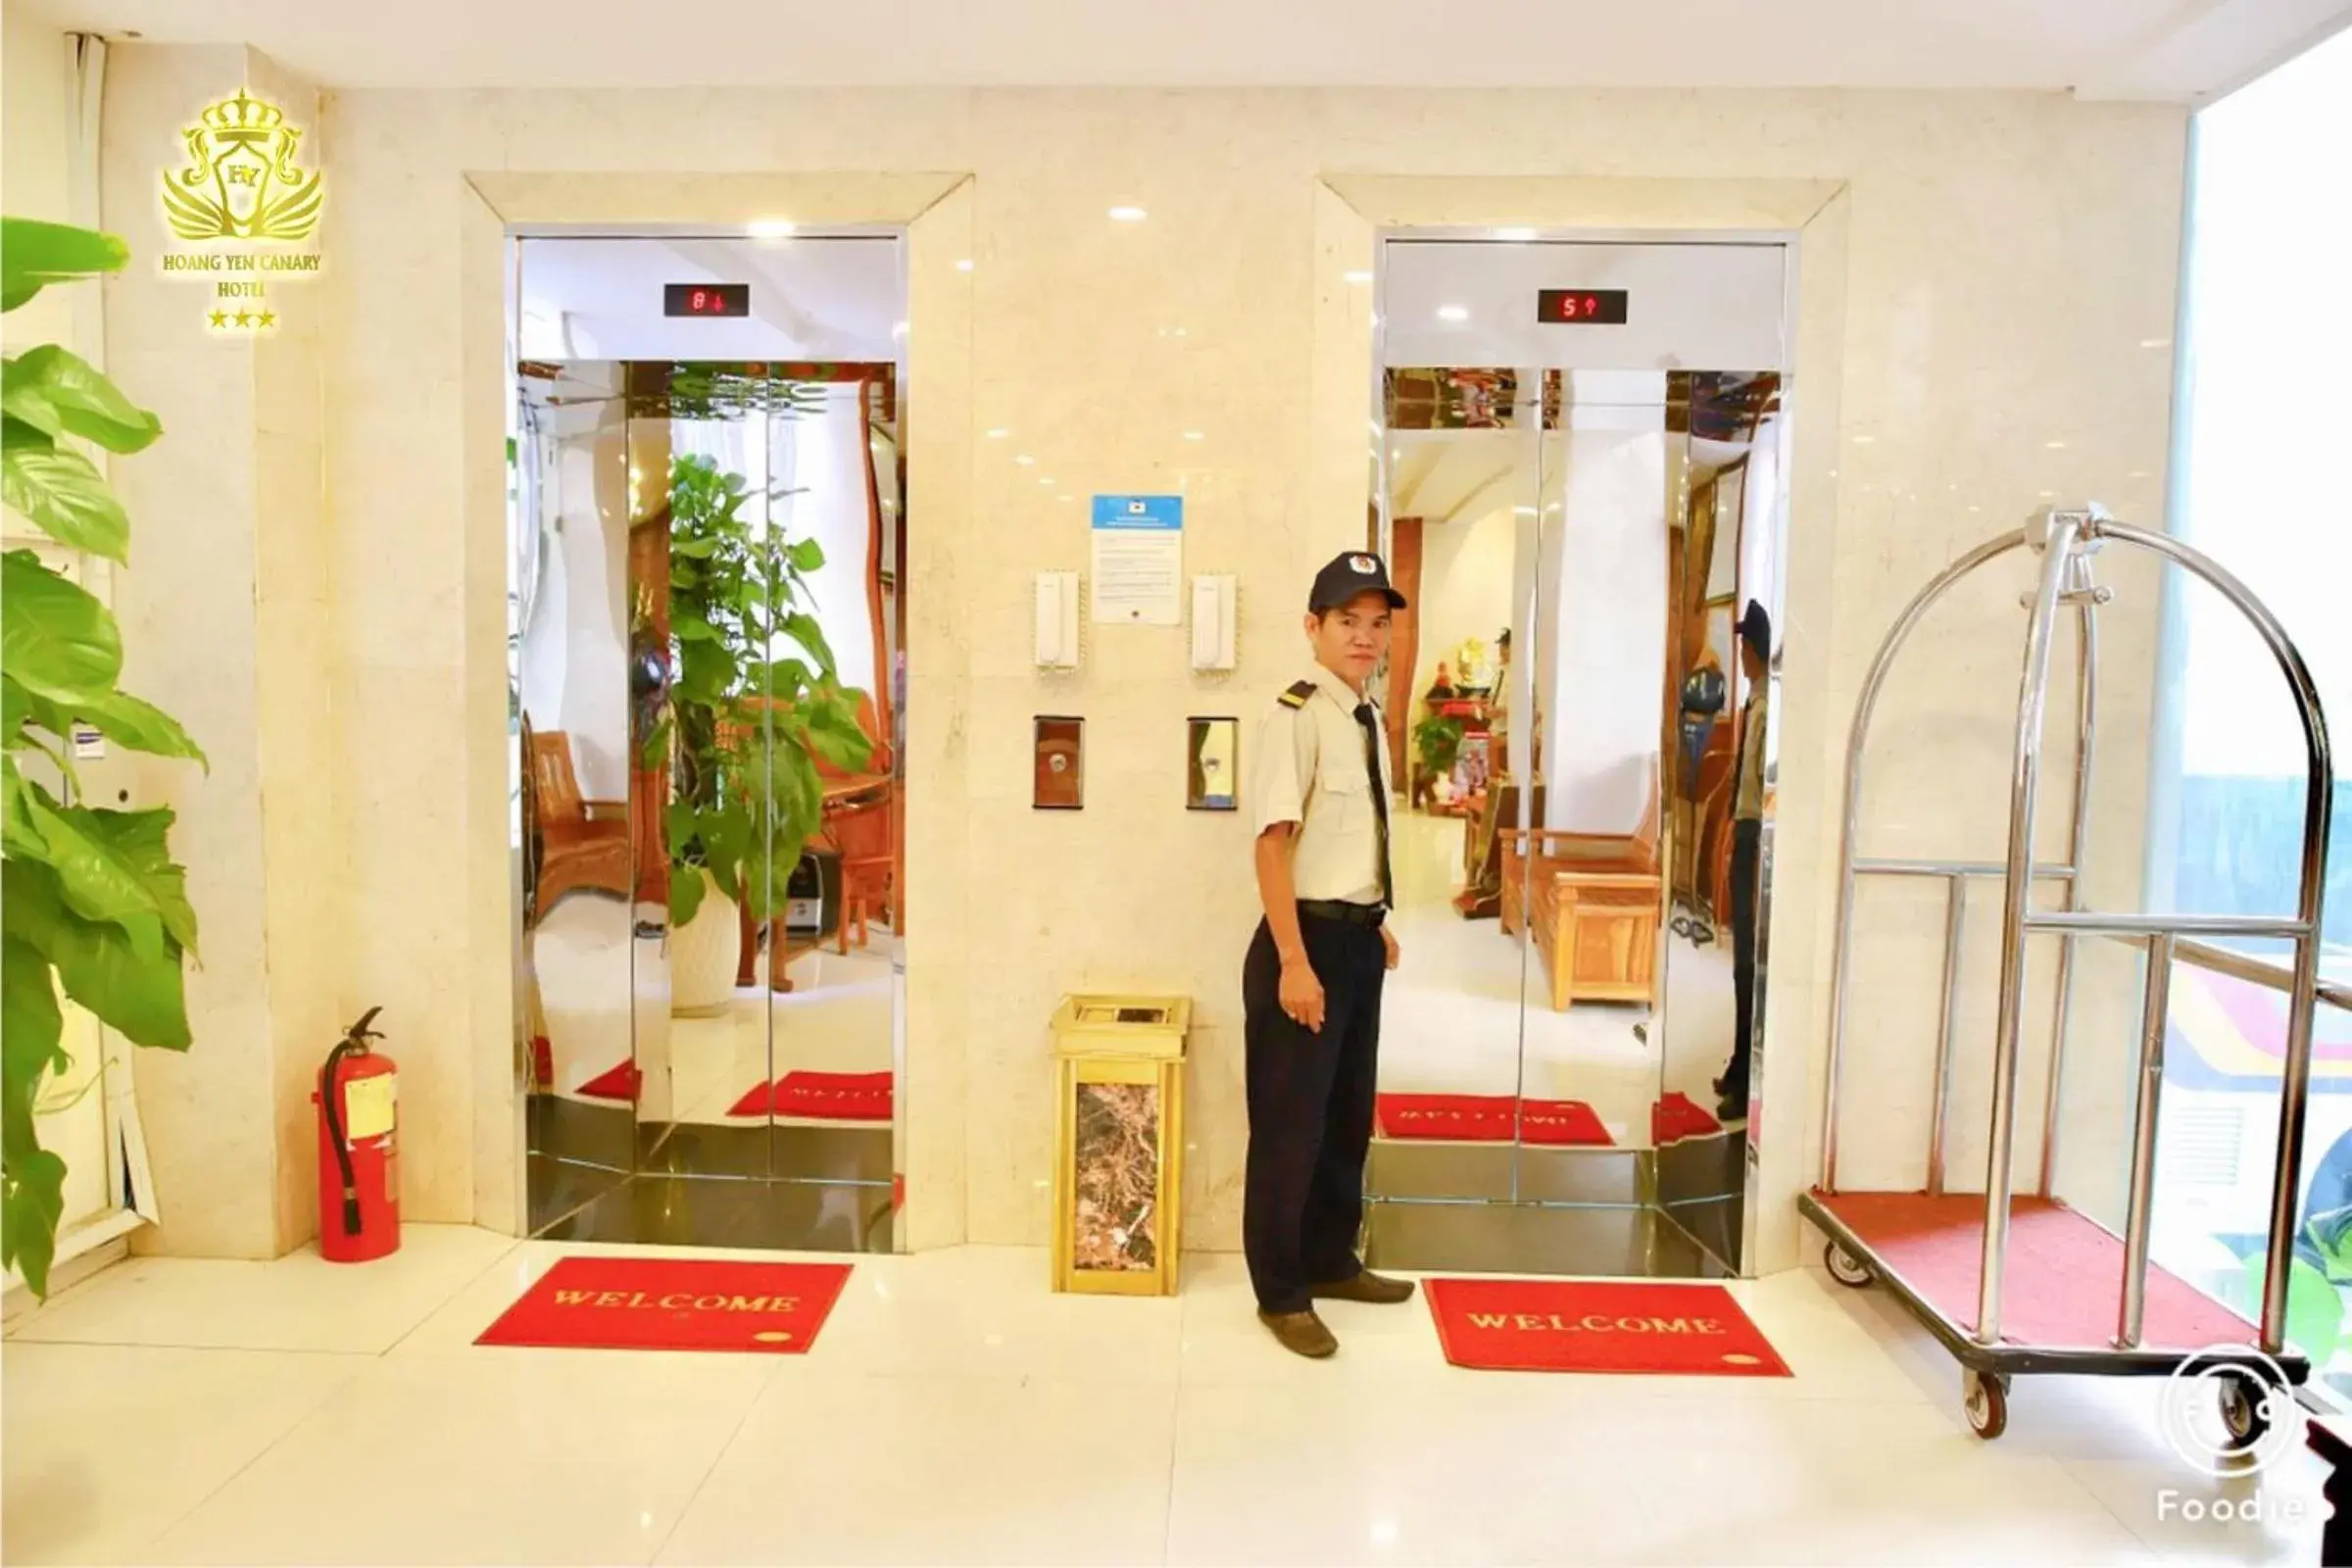 Breakfast, Lobby/Reception in Hoang Yen Canary Hotel